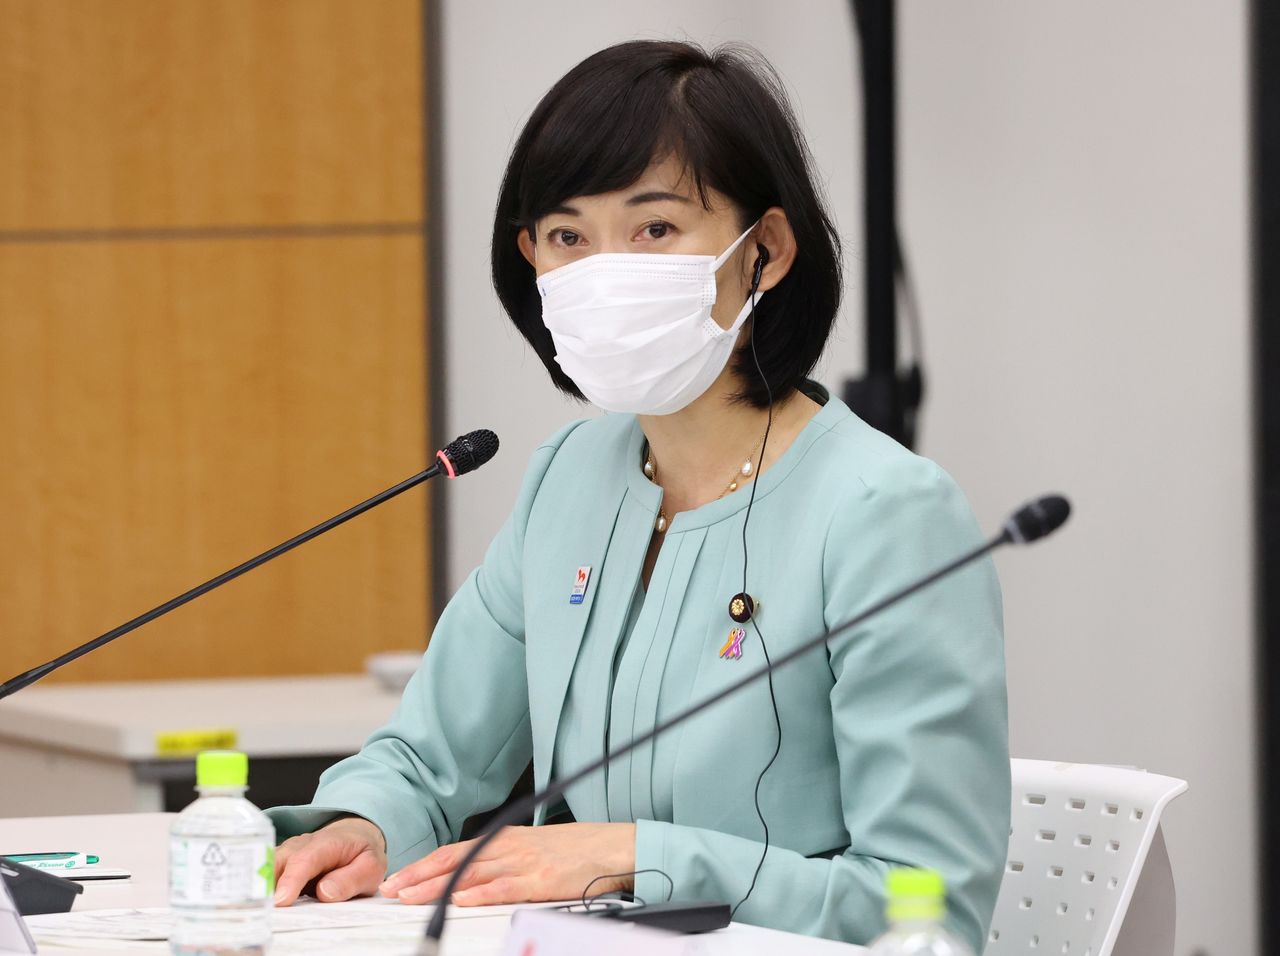 FOTO DE ARCHIVO: La ministra para los Juegos Olímpicos y Paralímpicos de Japón, Tamayo Marukawa, durante una conferencia celebrada en Tokio, Japón, el 19 de mayo de 2021.Yoshikazu Tsuno/POOL vía REUTERS